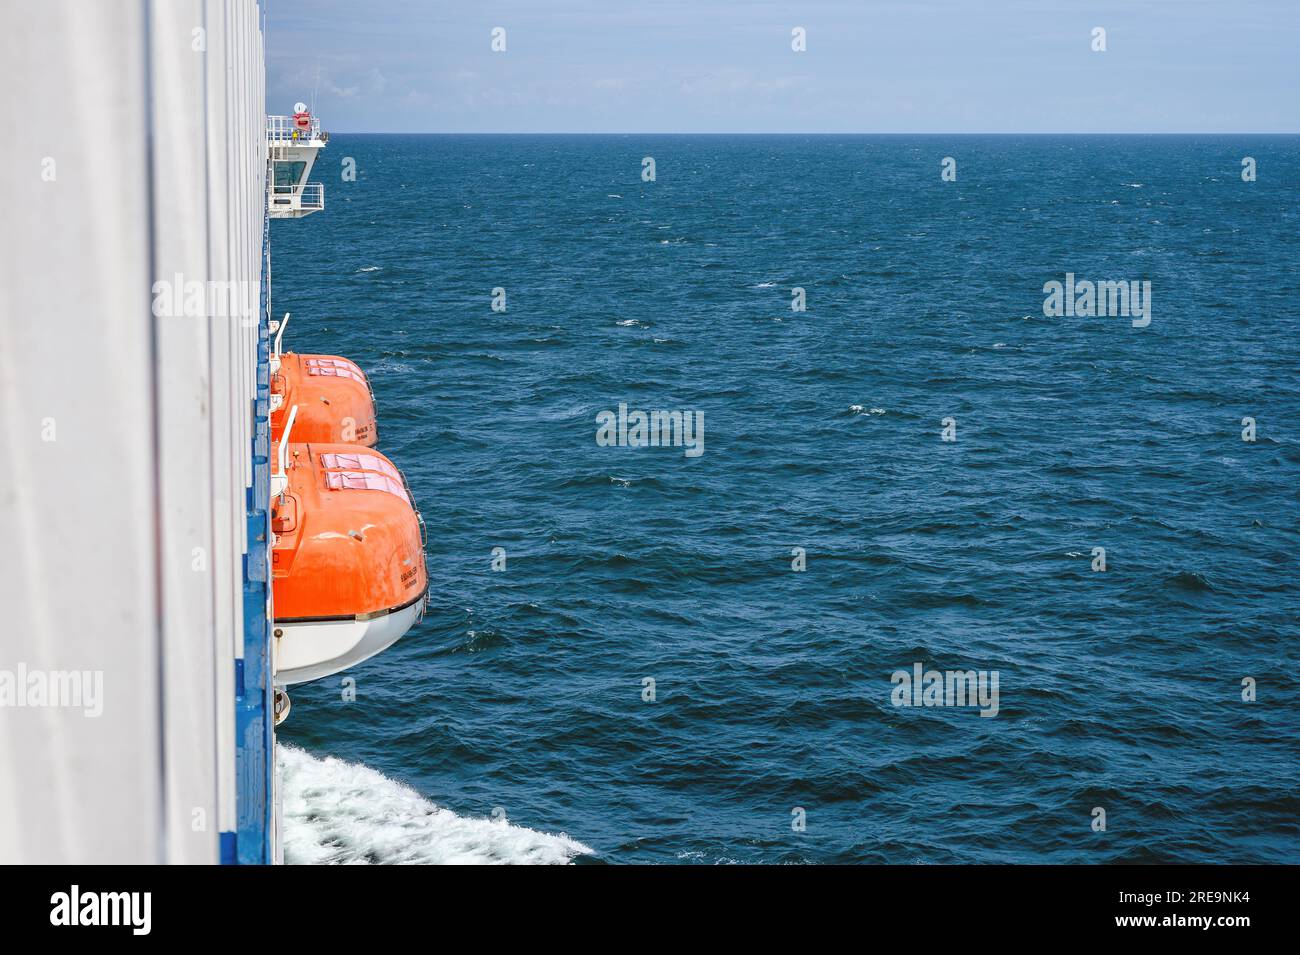 Ein Blick auf das Meer von Bord der Kanalfähre Galicia, die Rettungsboote und die Brücke zeigt. Stockfoto